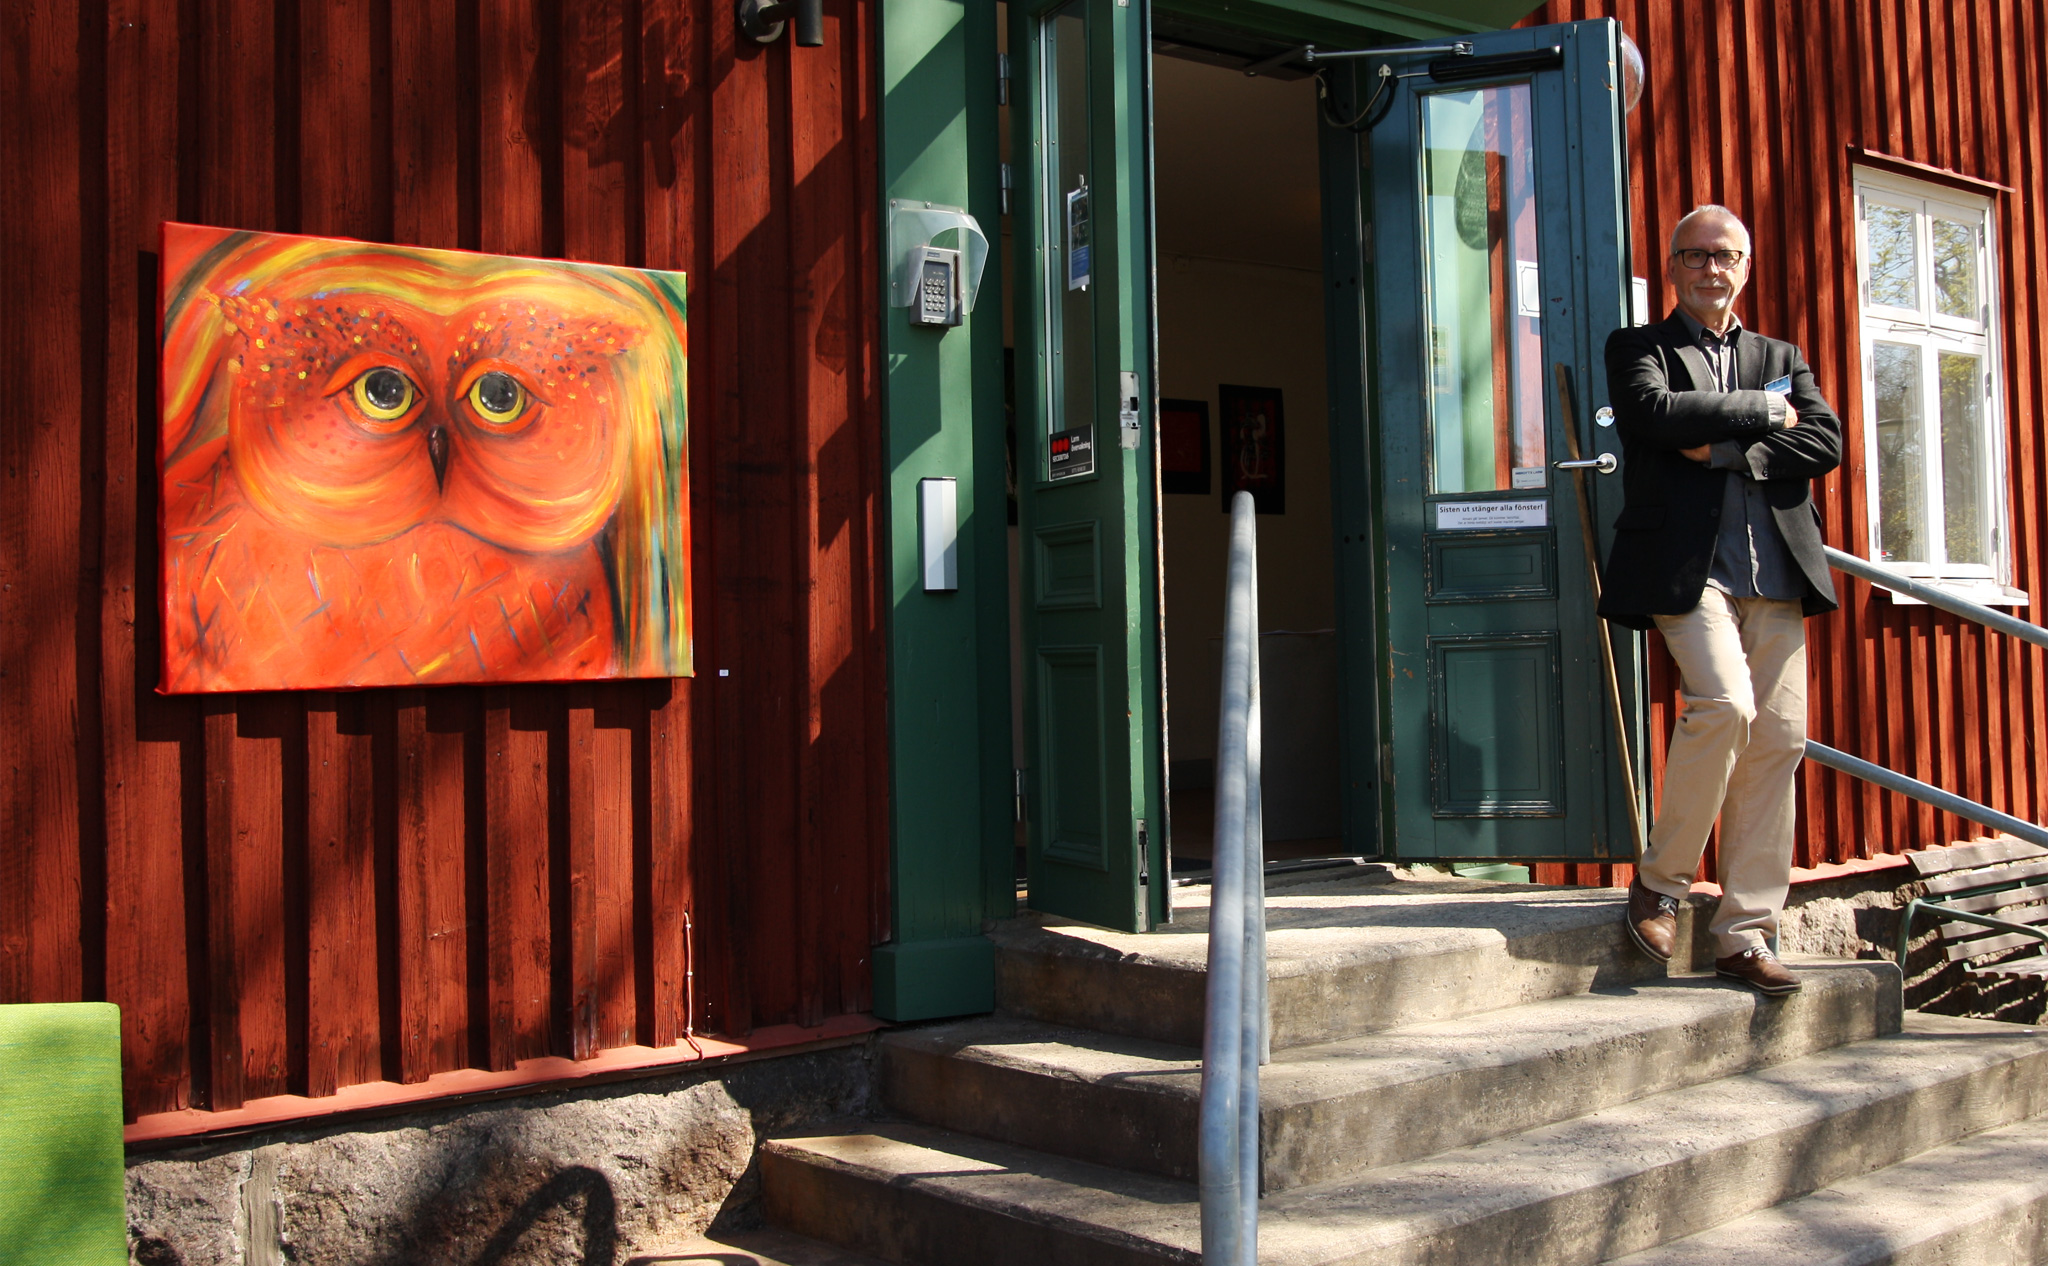 Konsthusets dörrar står öppna, en lärare stå utanför. På husets fasad hänger en röd tavla med en målad fågel.